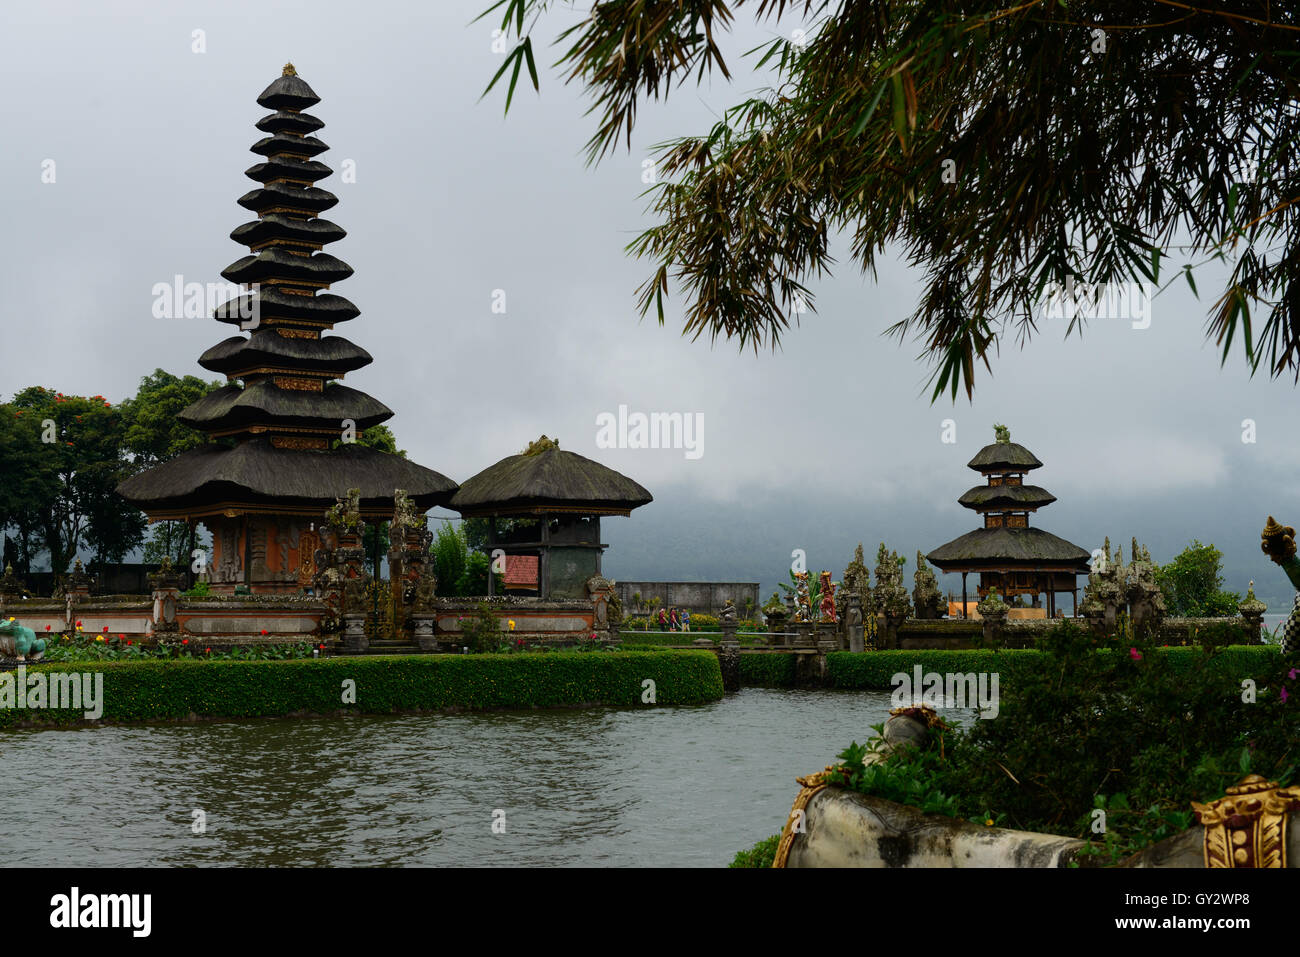 Tirta Empul Water Temple in Bali Stock Photo